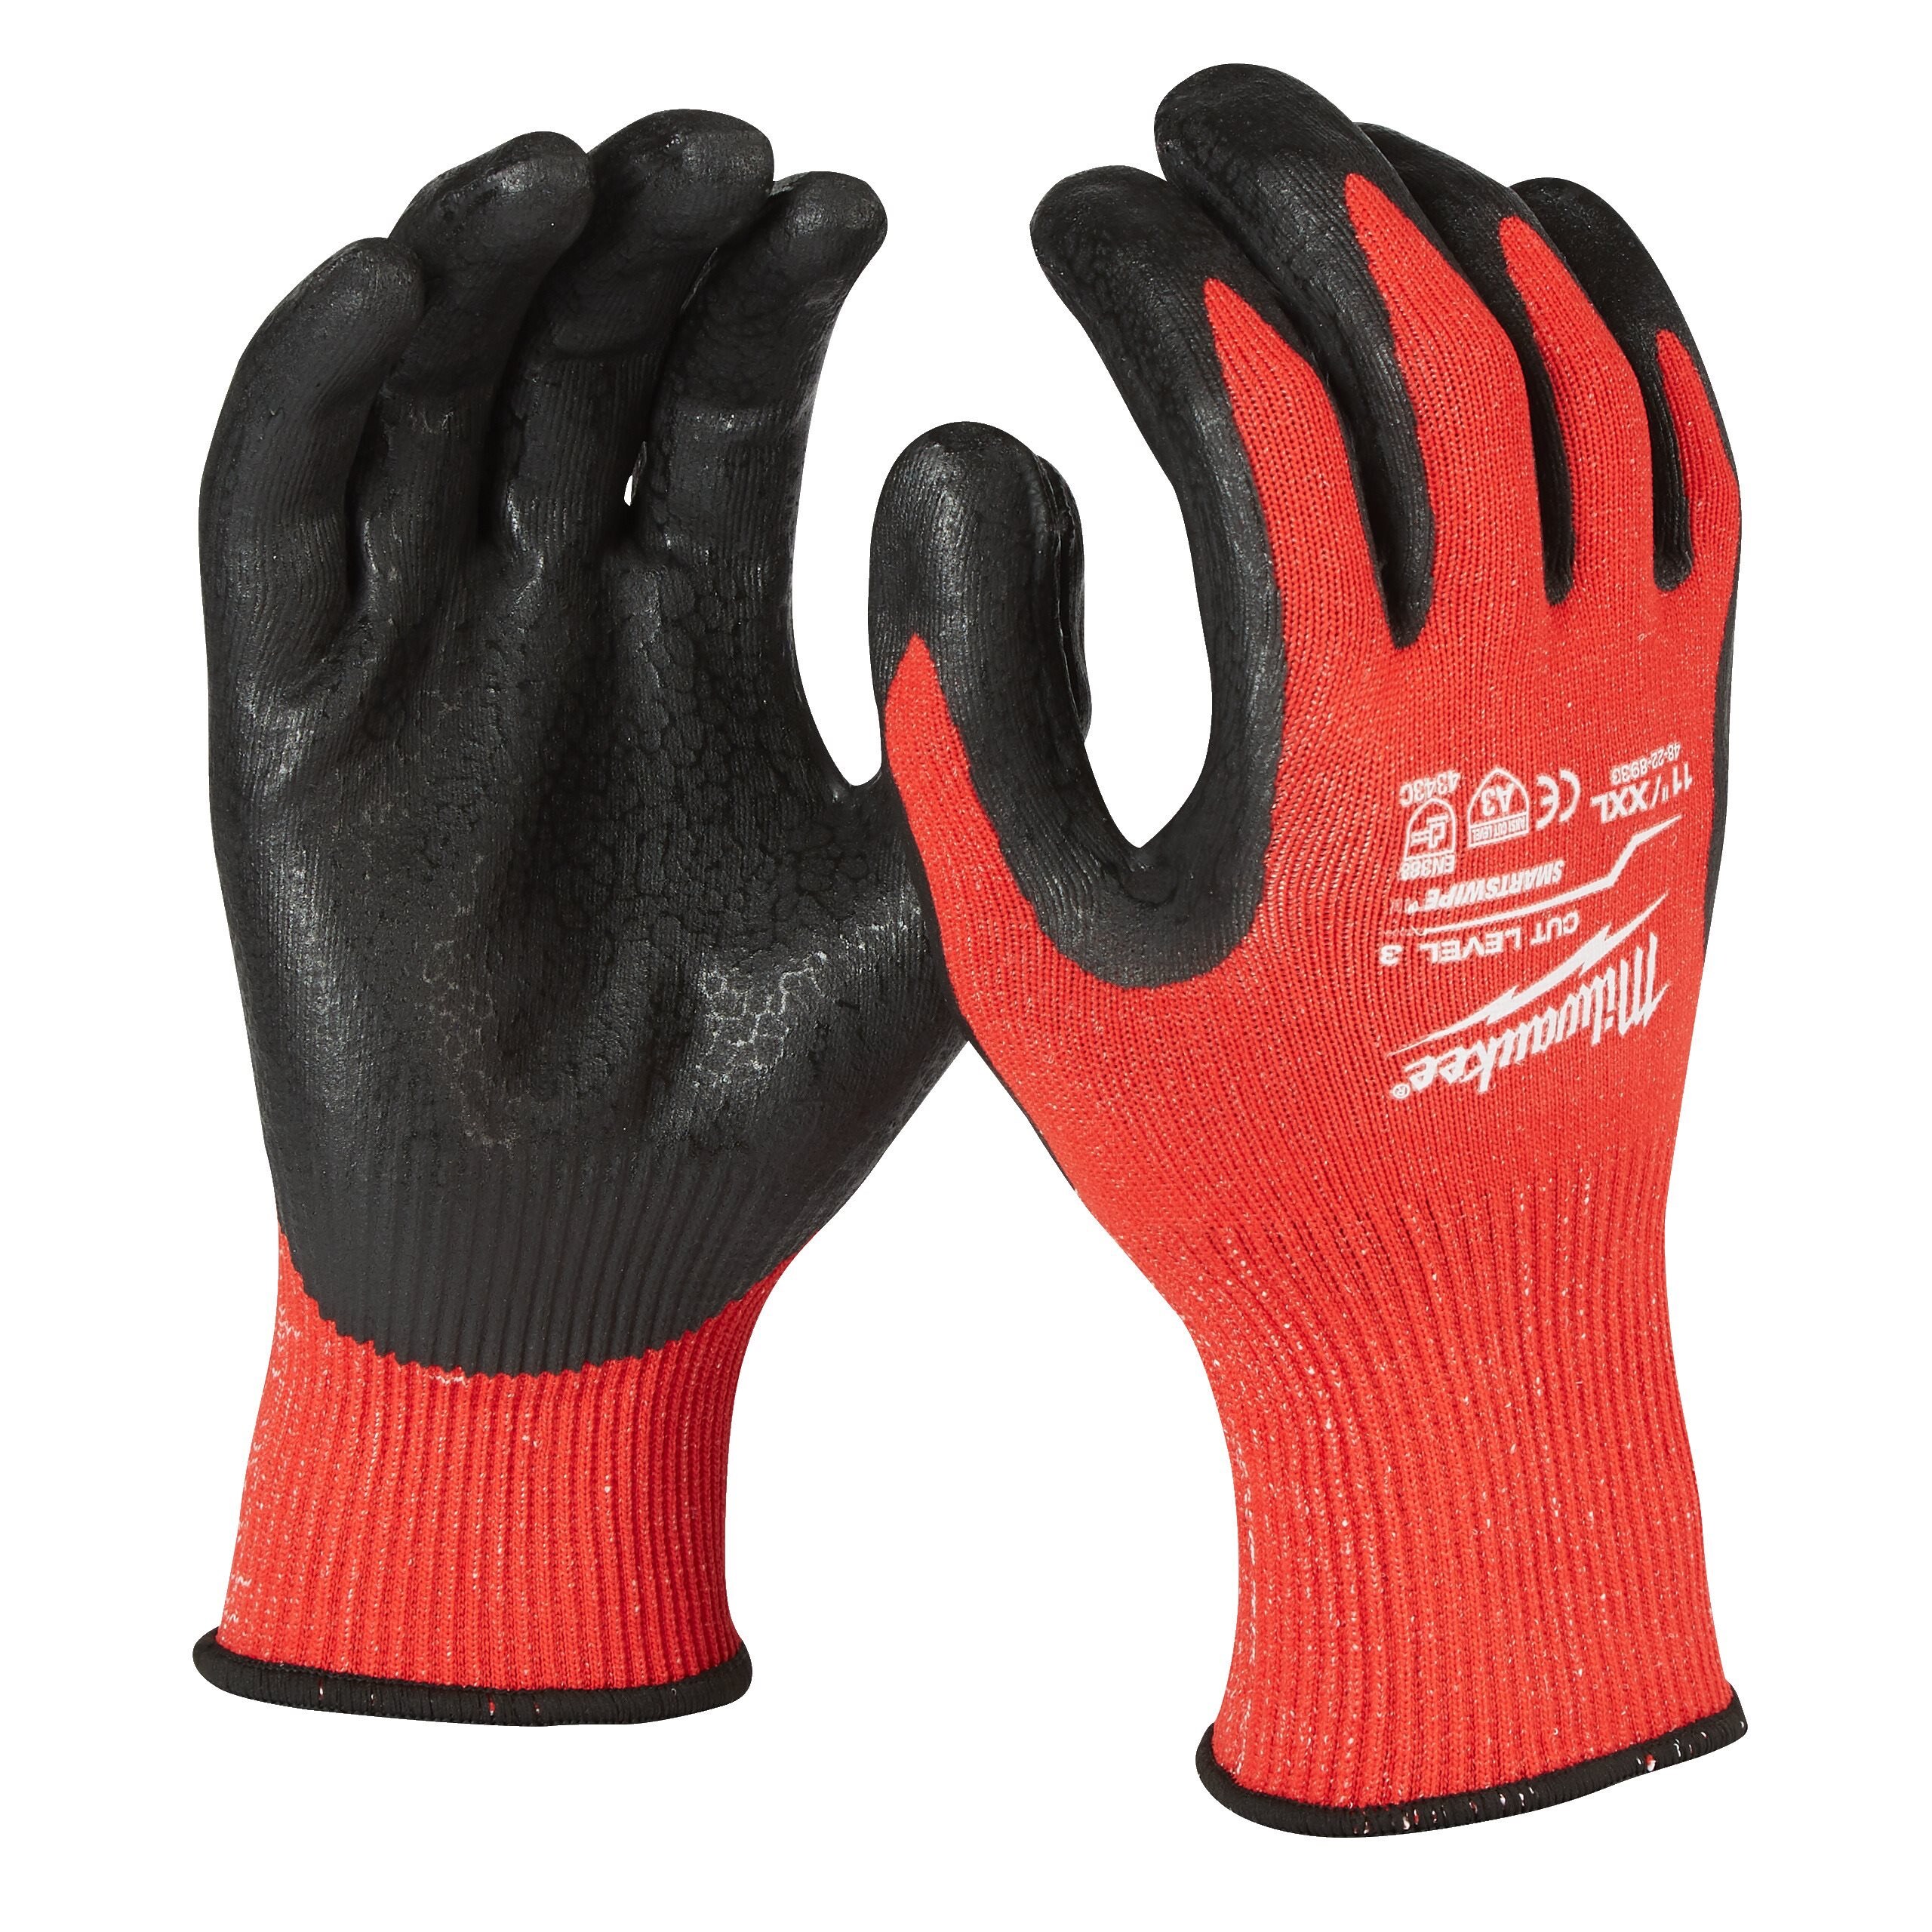 Перчатки защитные Milwaukee Cut Level 3/C, размер XXL/11, 4932471423 защитные перчатки milwaukee